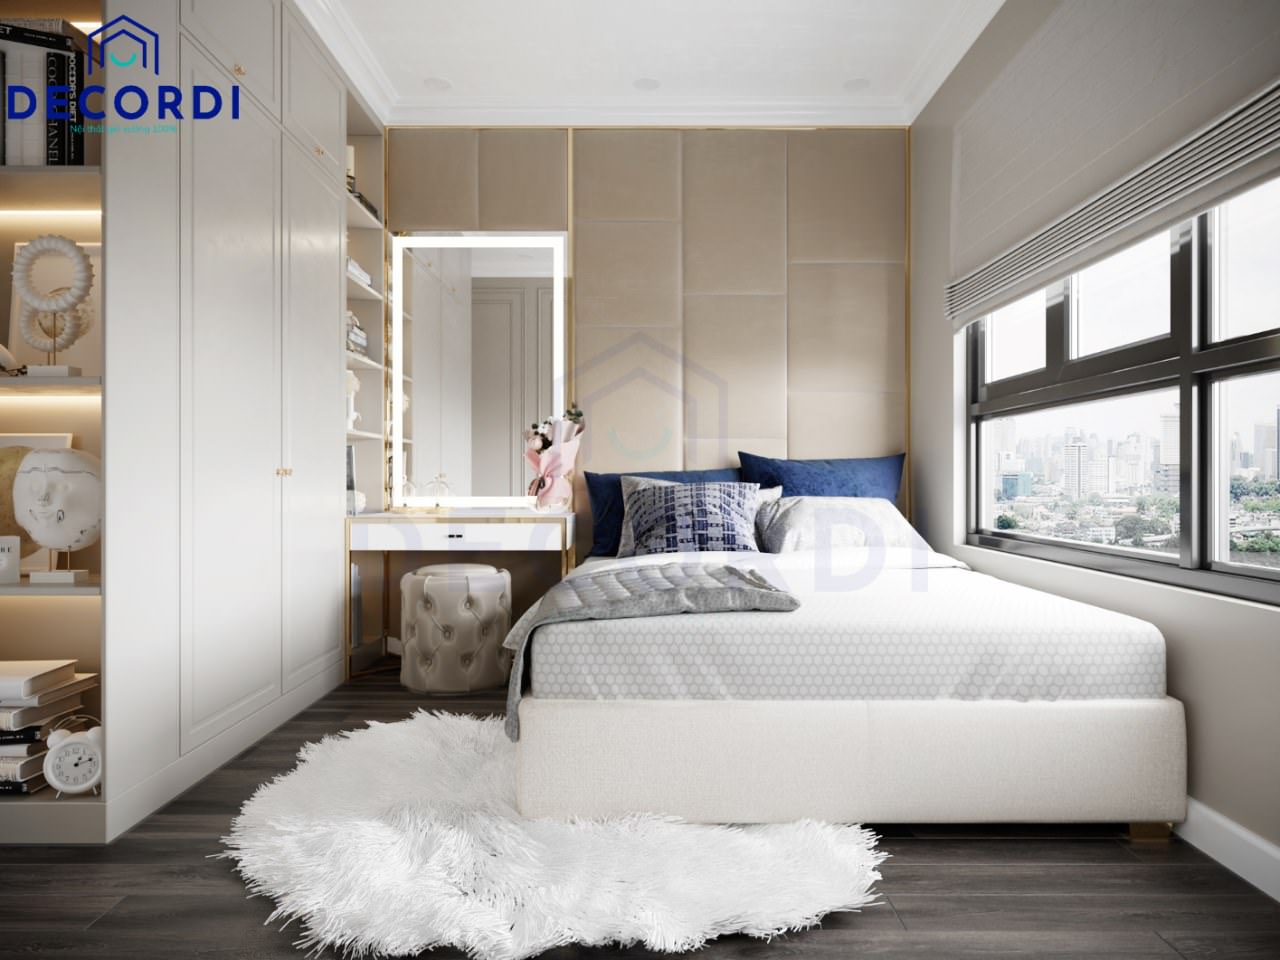 Thiết kế phòng ngủ cho con gái phong cách hiện đại sang trọng với tông màu trắng làm chủ đạo